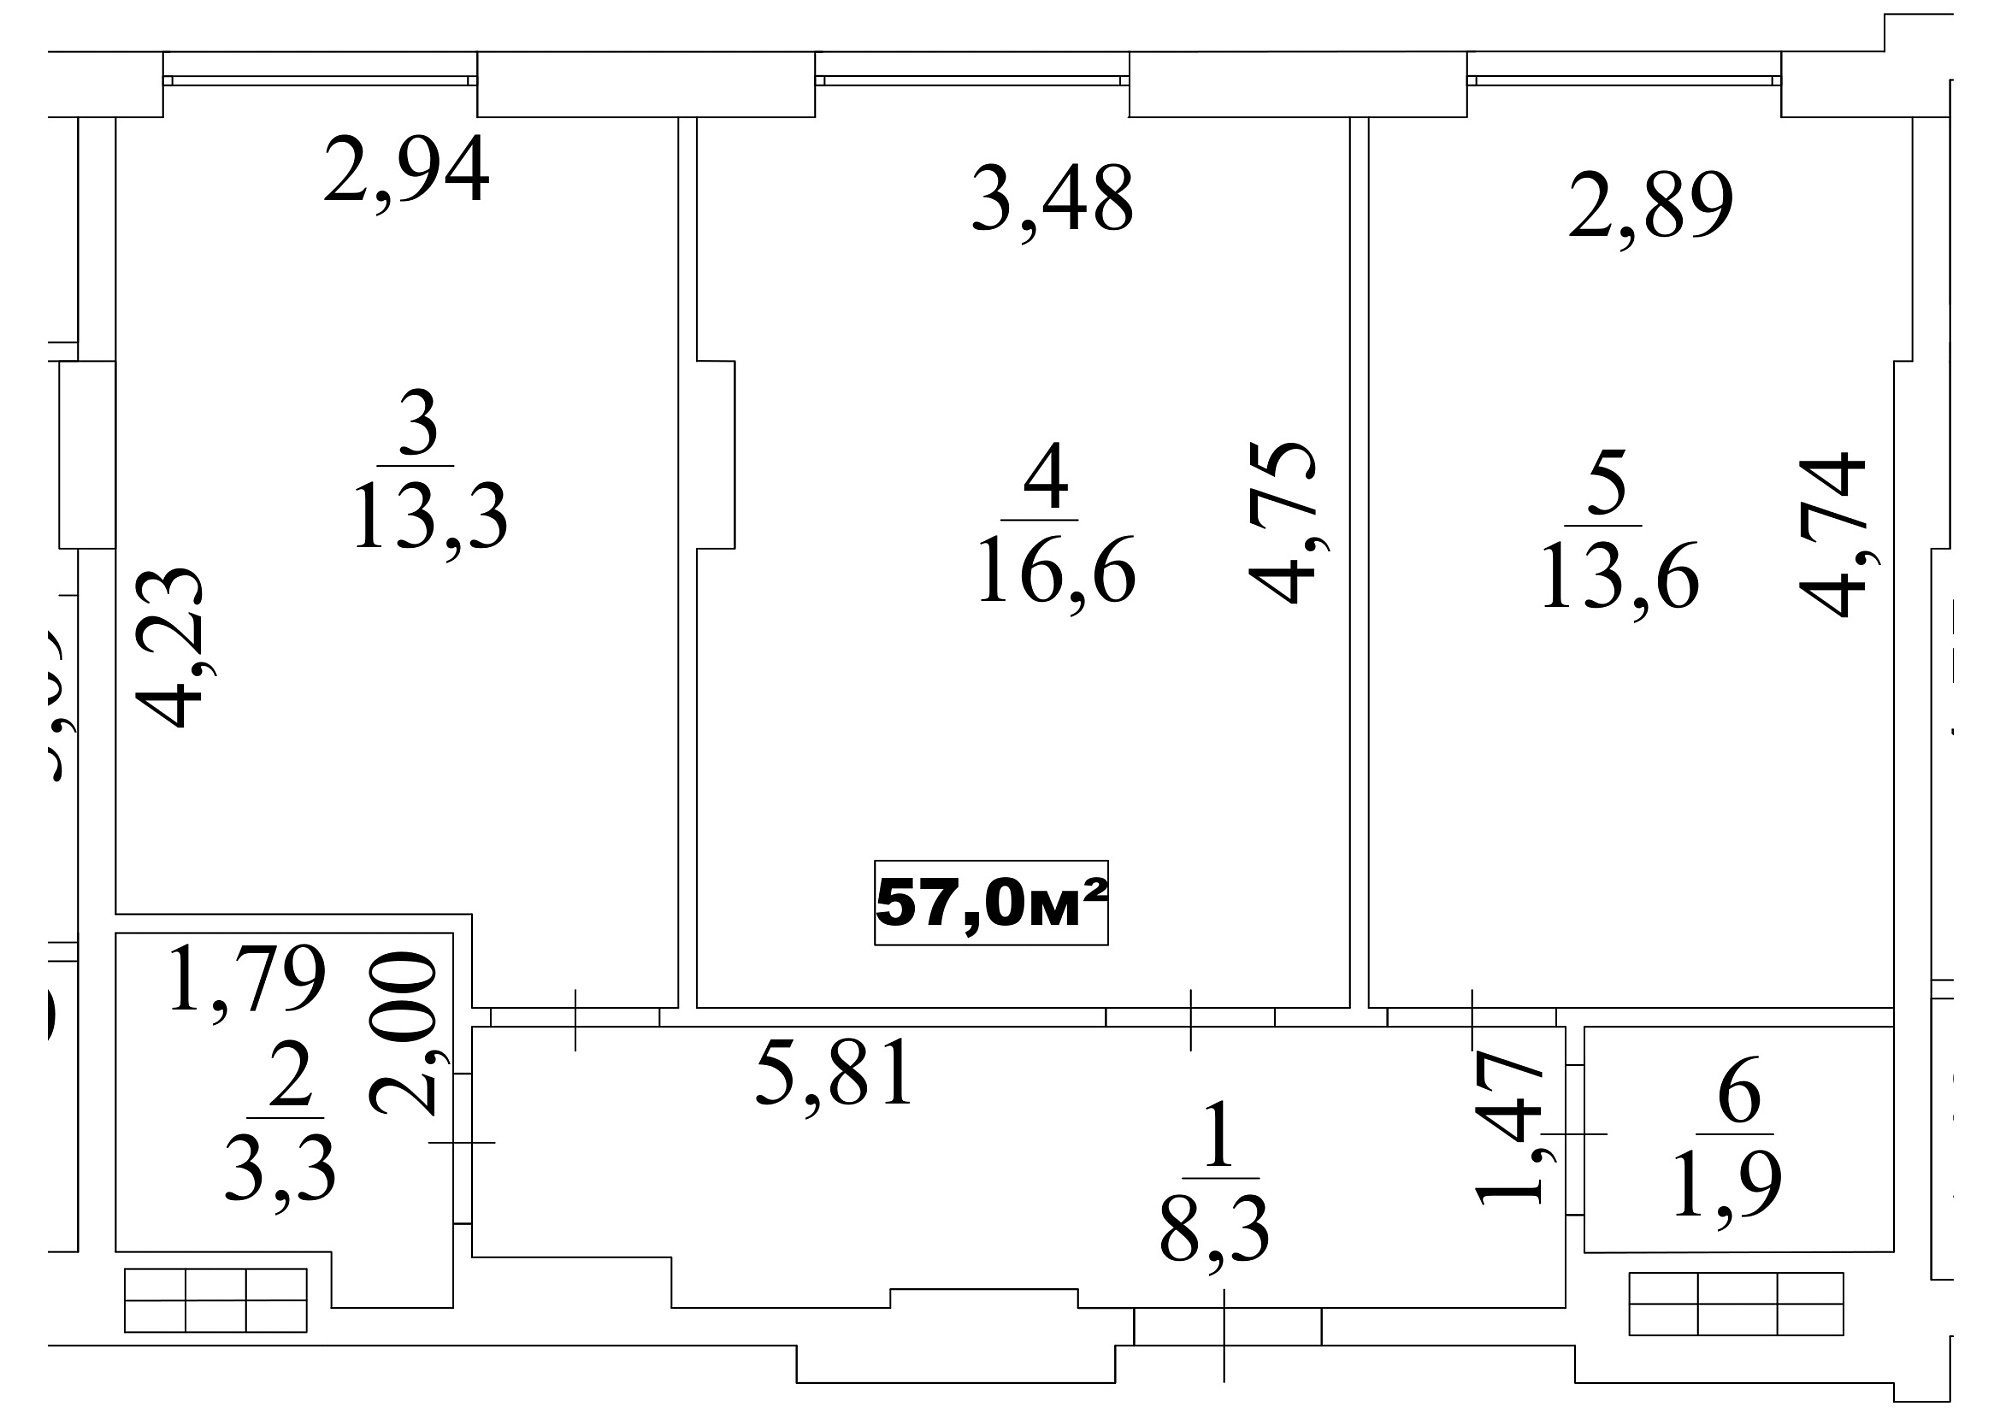 Планировка 2-к квартира площей 57м2, AB-10-10/00085.